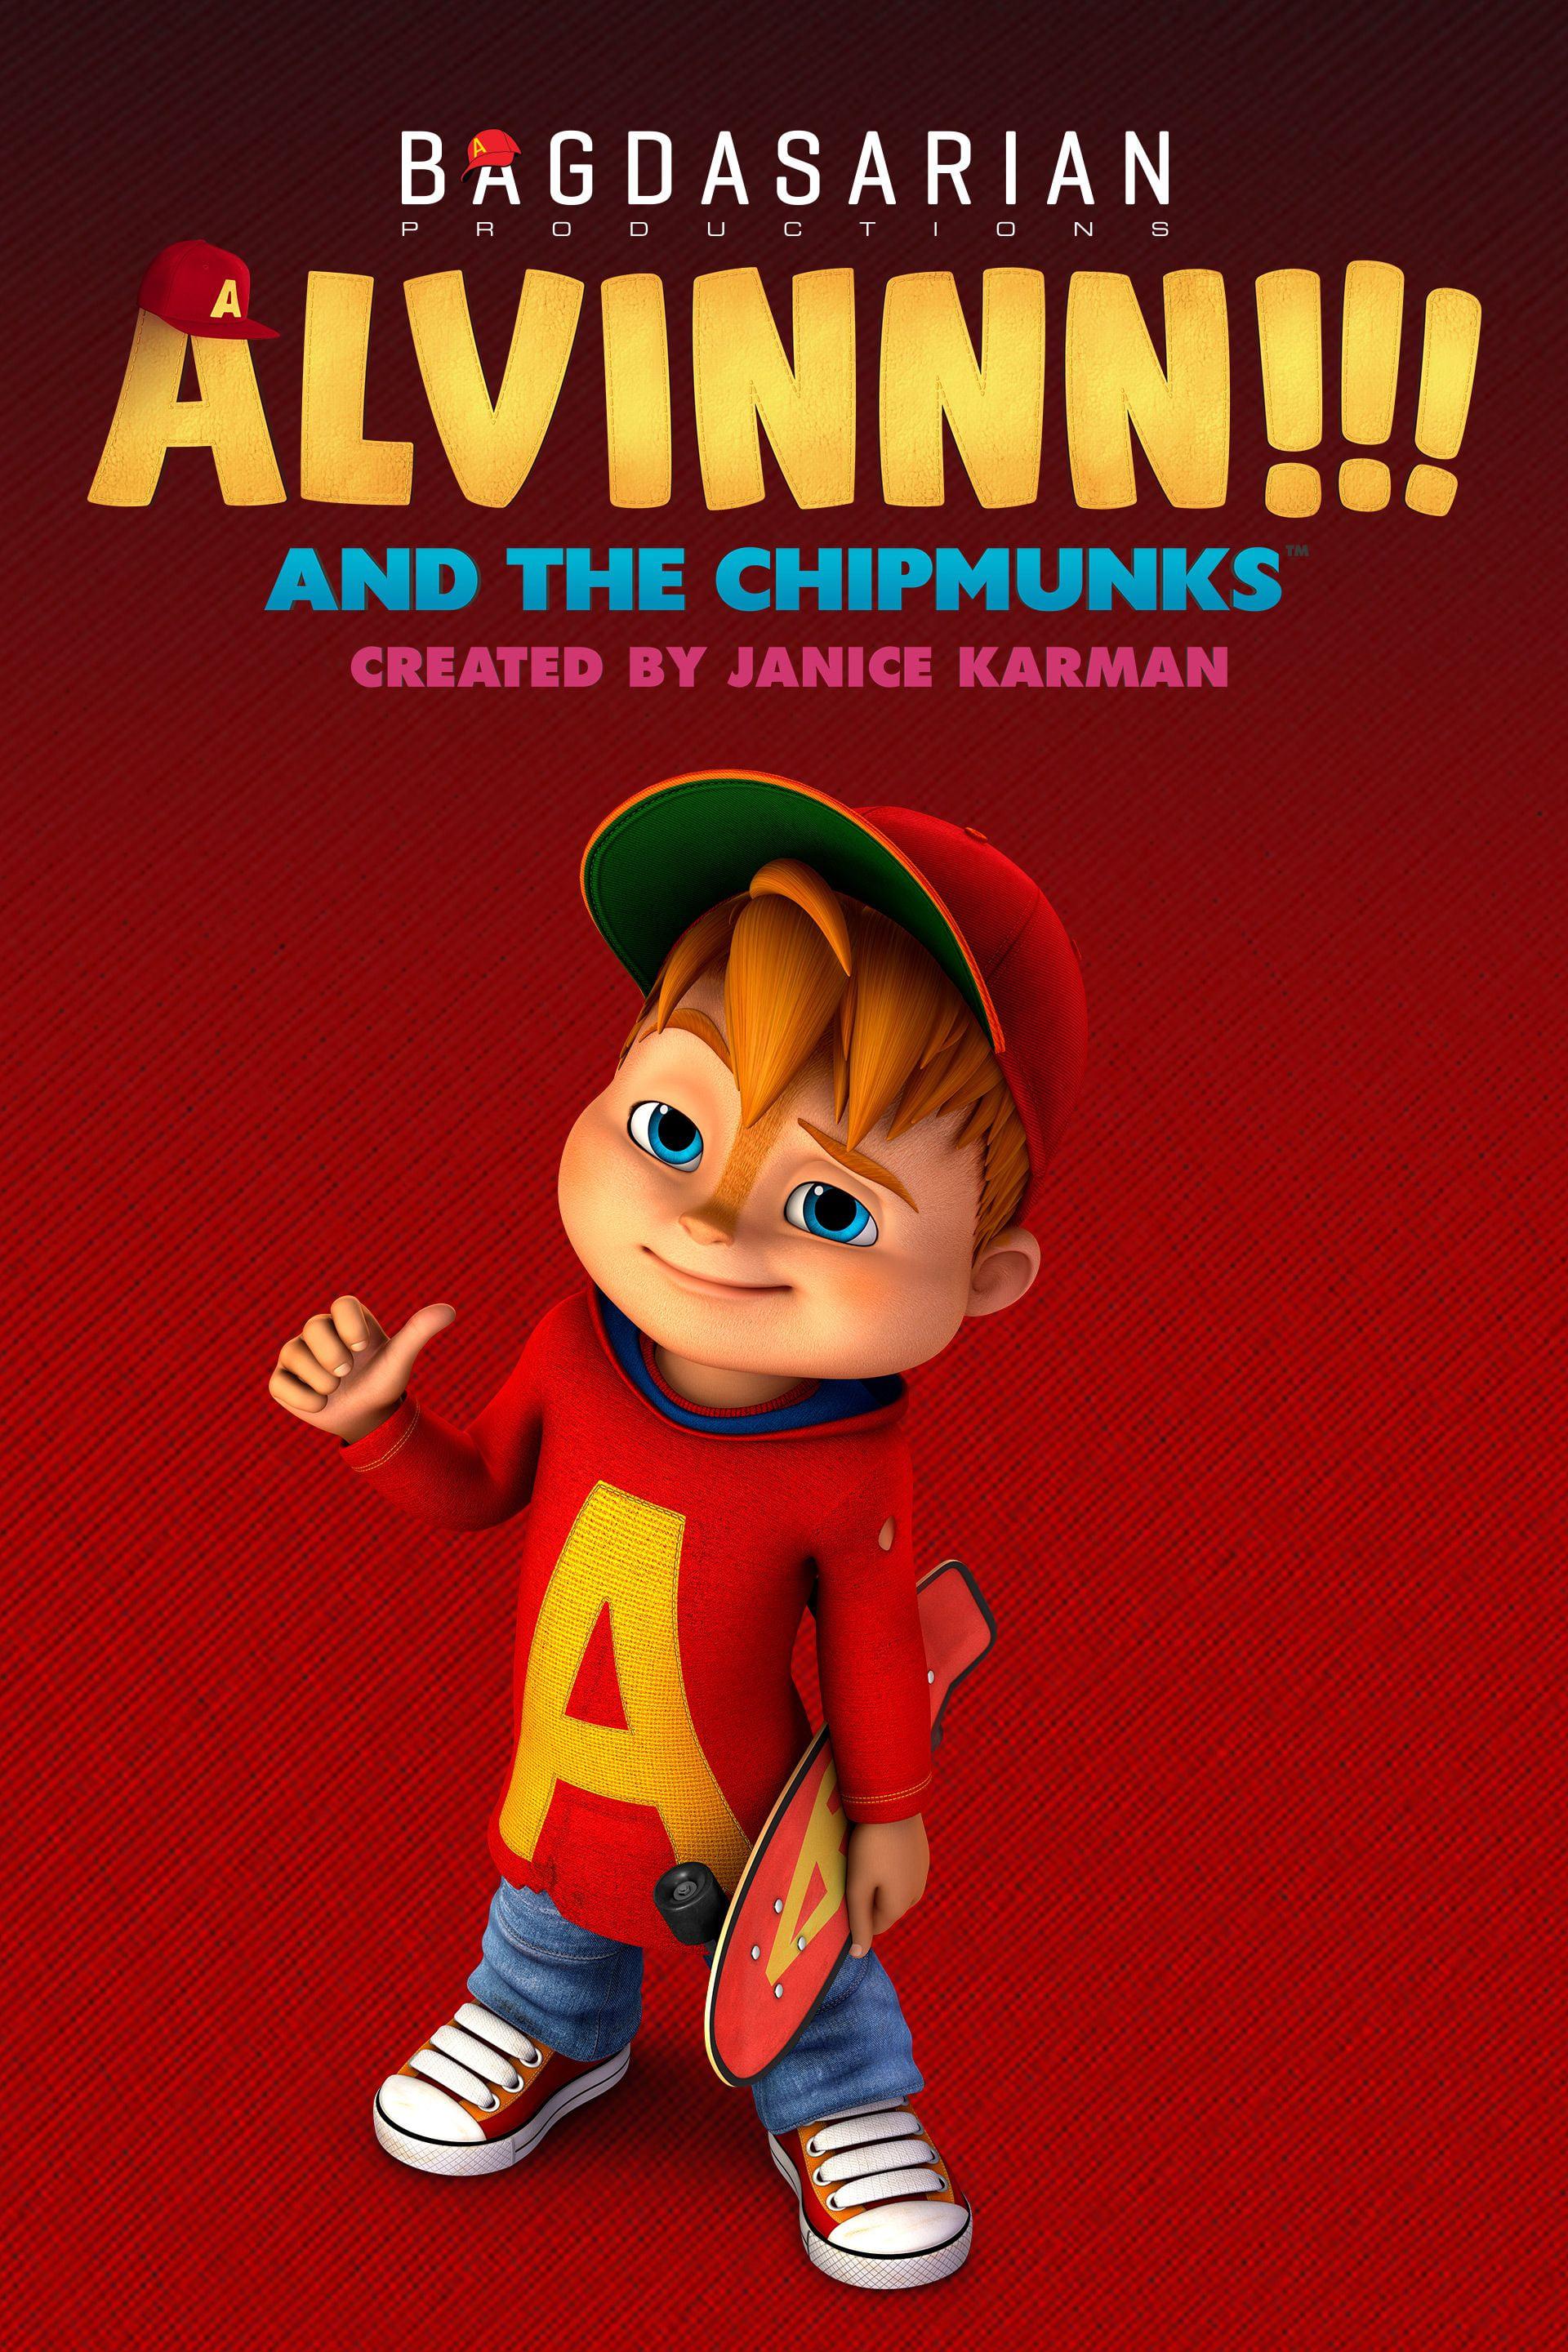 Alvinnn!!! and The Chipmunks poster